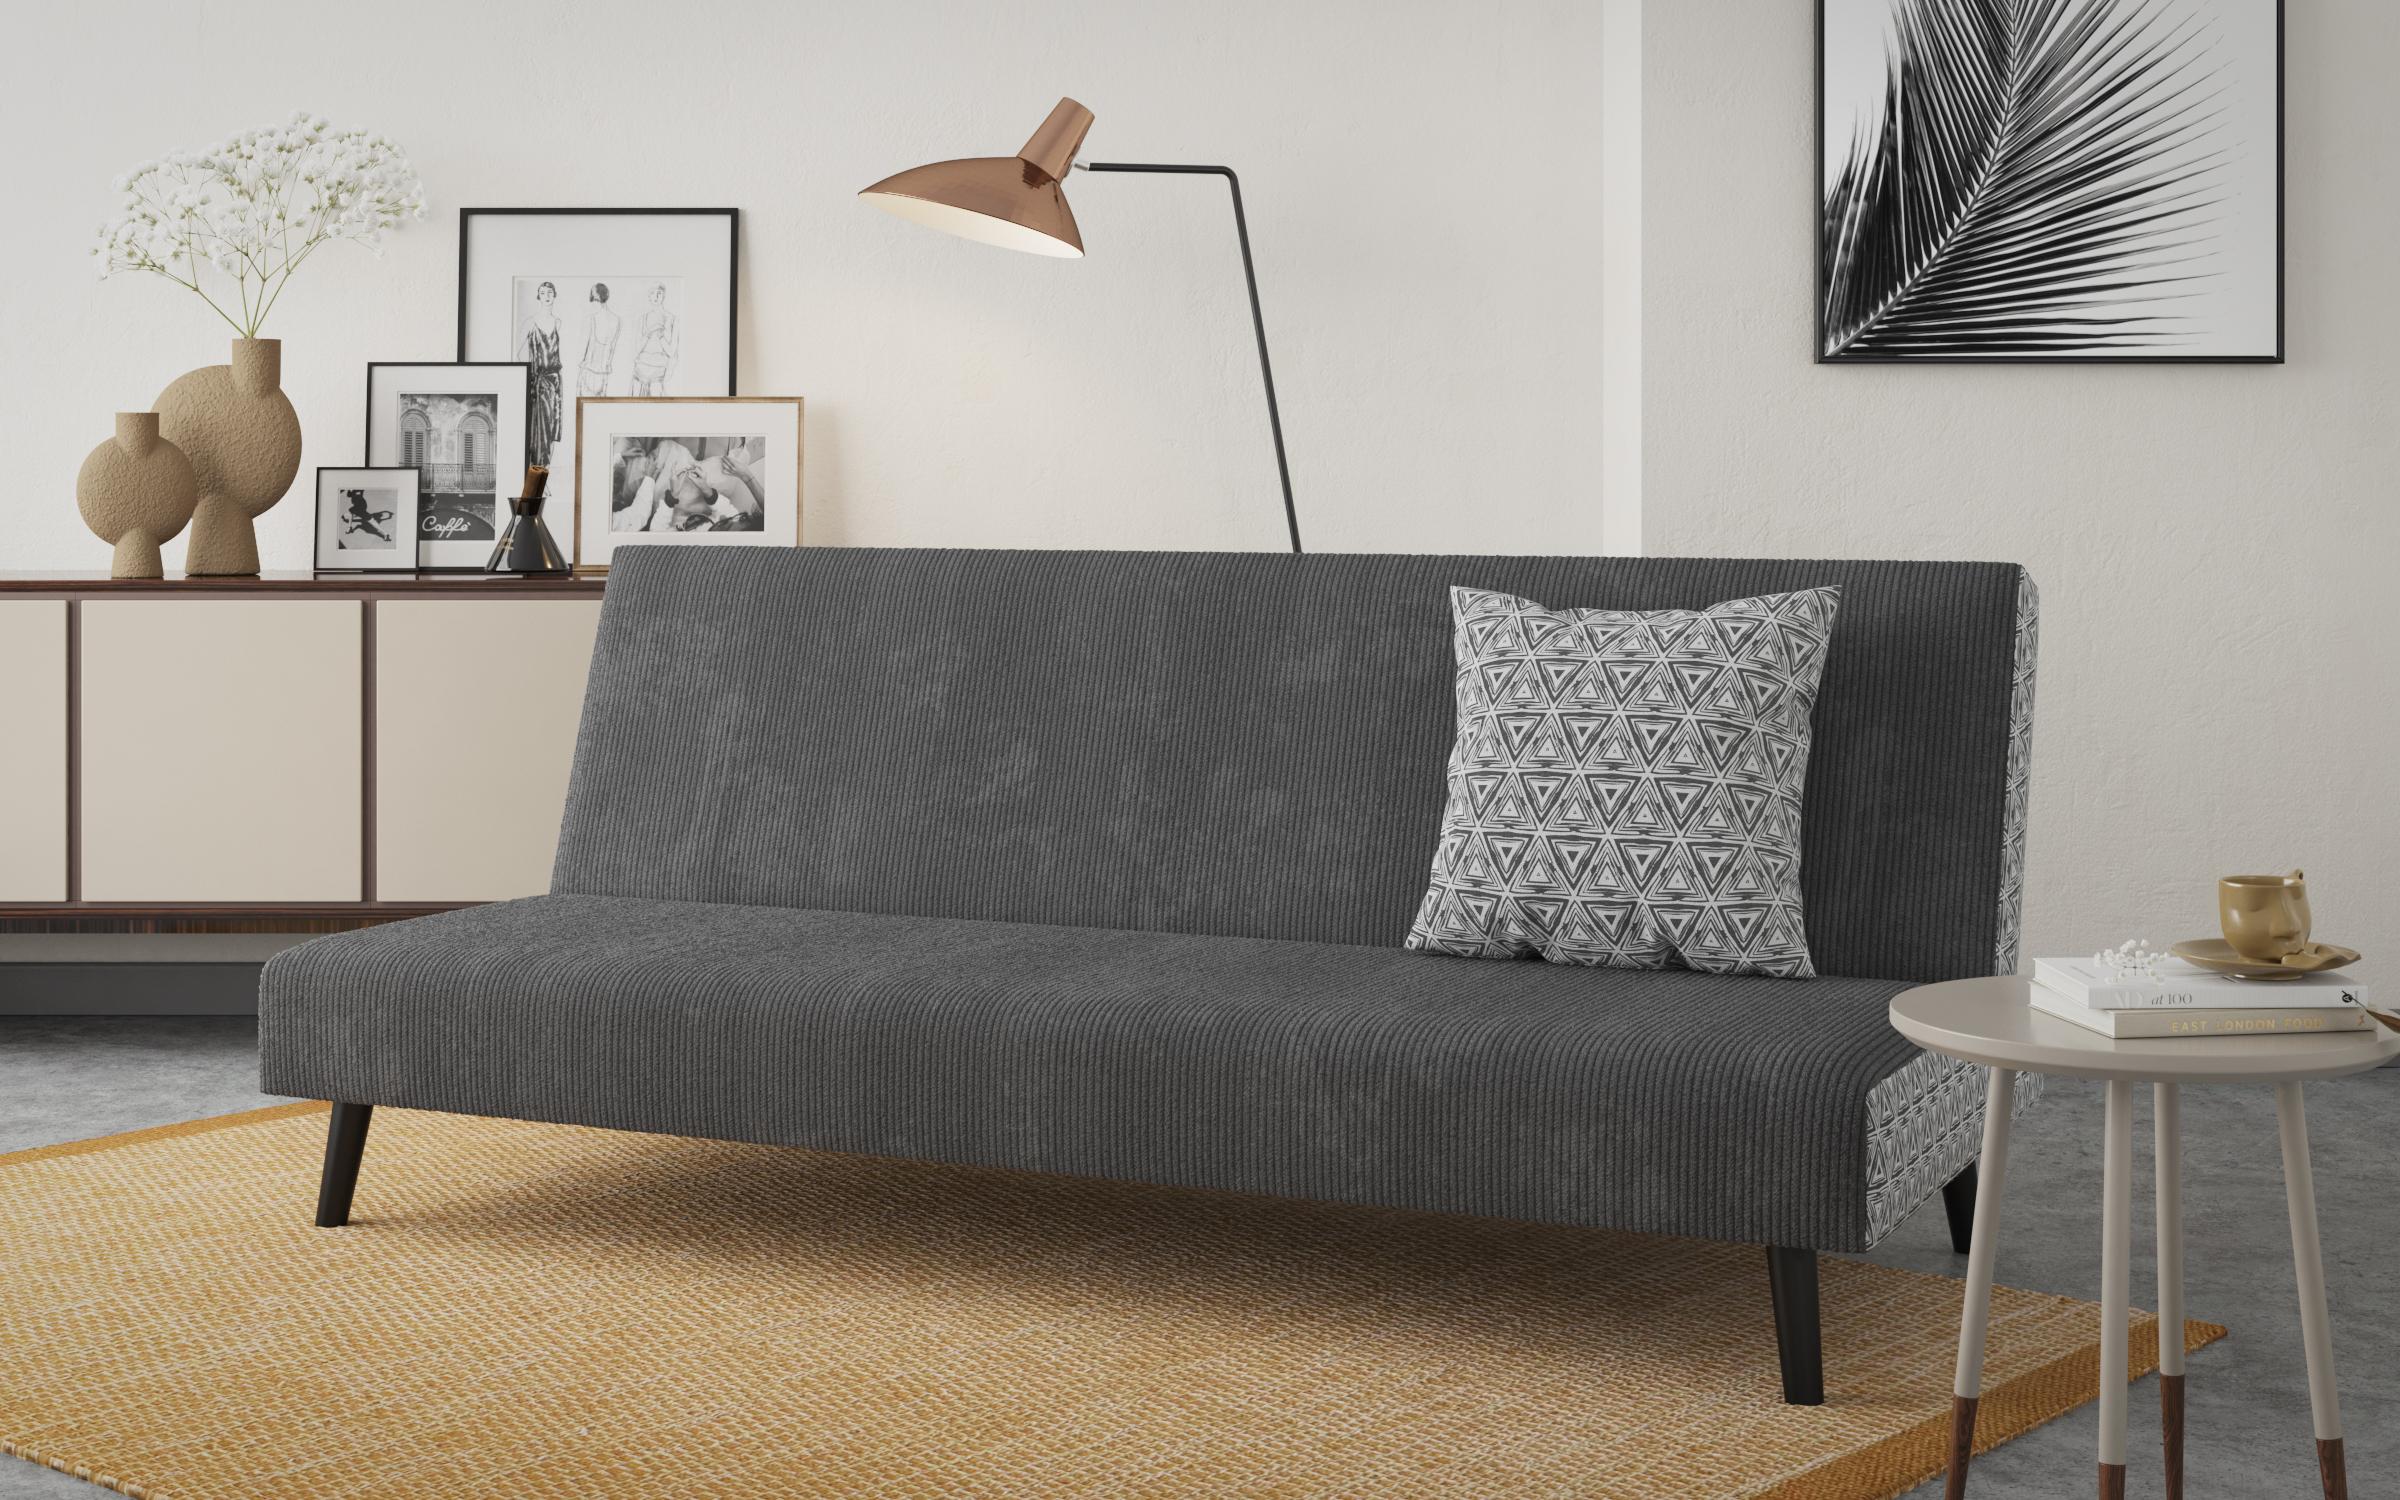 Κλικ κλακ καναπές  Vaskon, σκούρο γκρί  + print  2